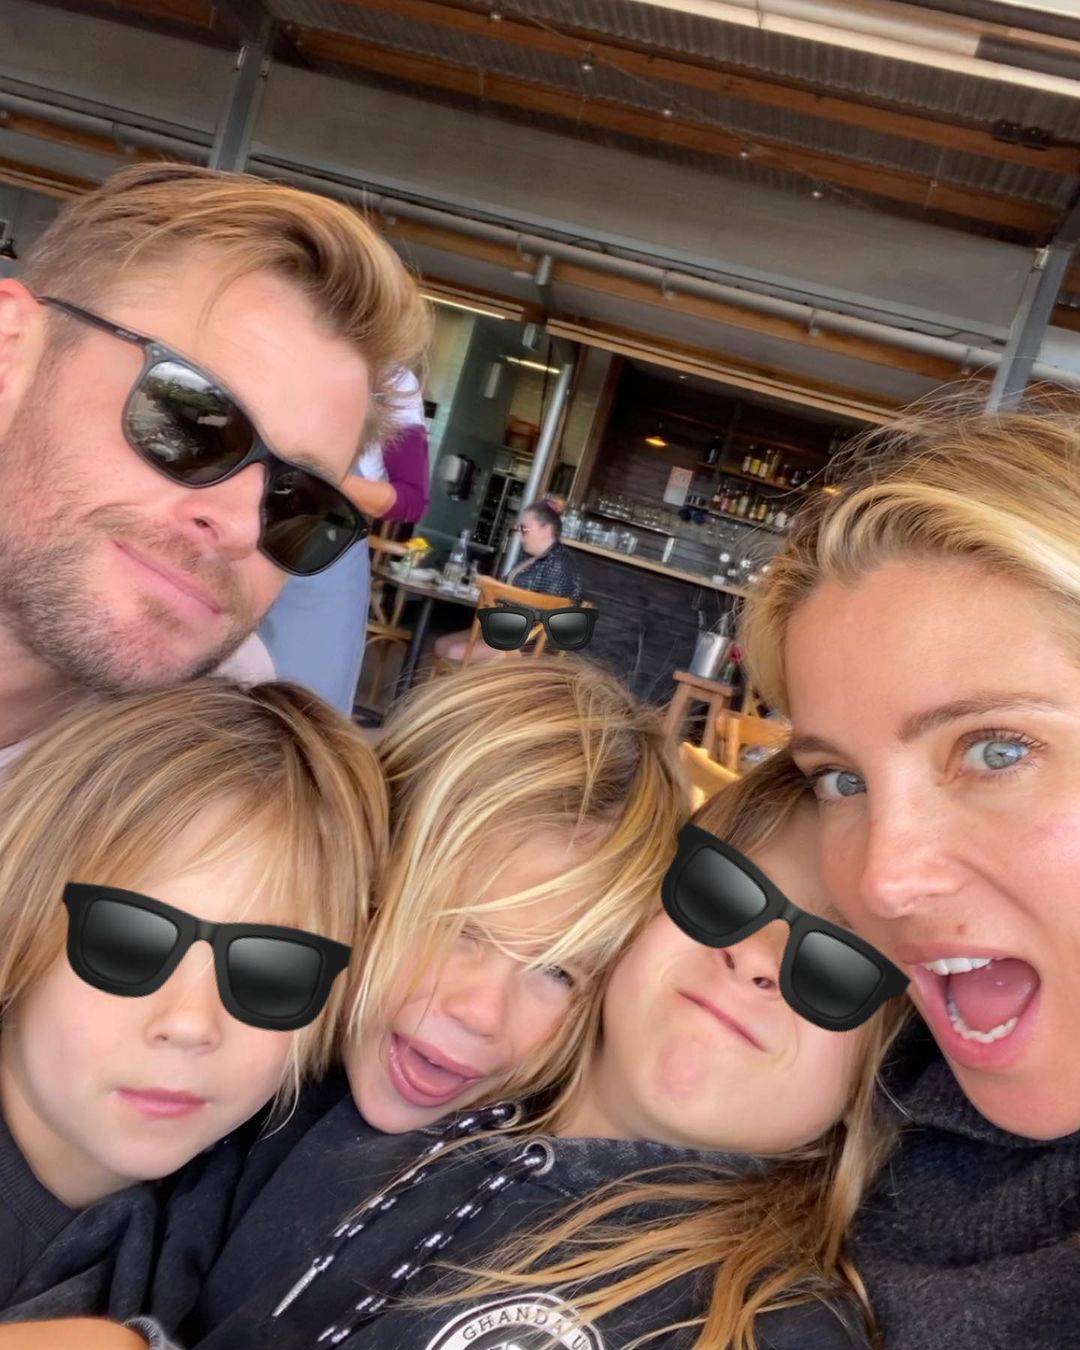 Chris Hemsworth obiteljskom je fotkom razbijesnio fanove: 'Daj pazite što radite, opasno je!'